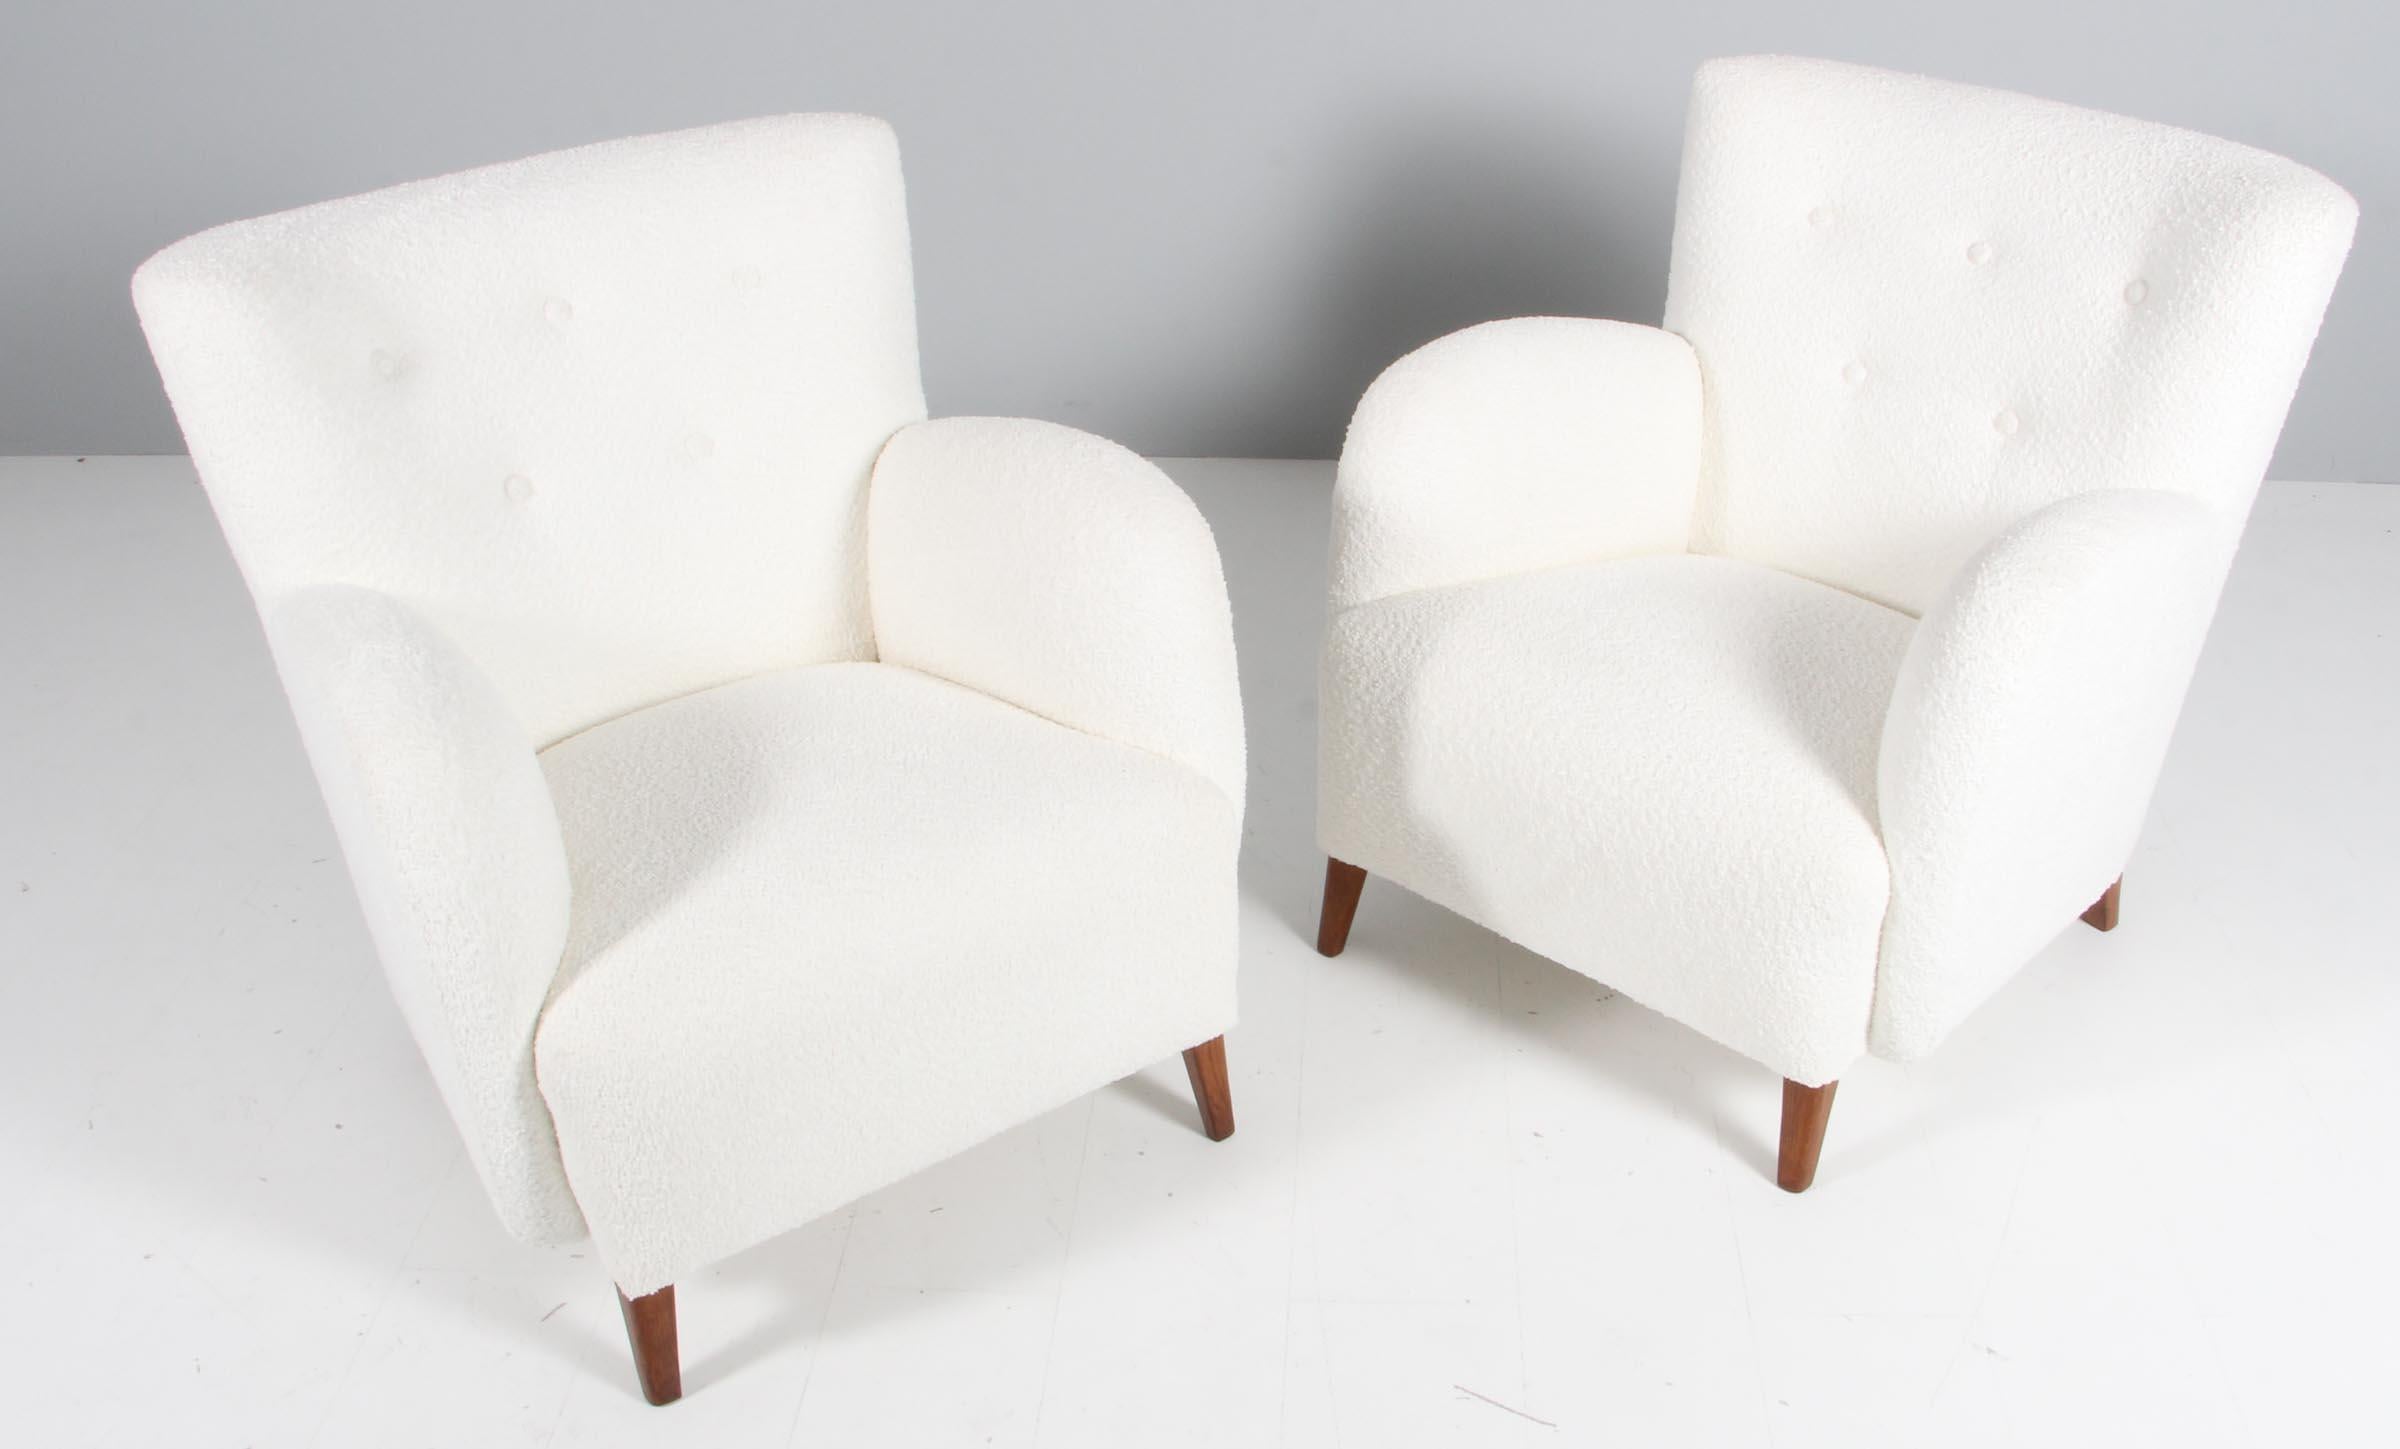 Dänische Tischler Paar Lounge-Stühle neu gepolstert mit Boucle, 

Beine aus gebeizter Buche und gebeizter Eiche.

Hergestellt in den 1950er Jahren.

